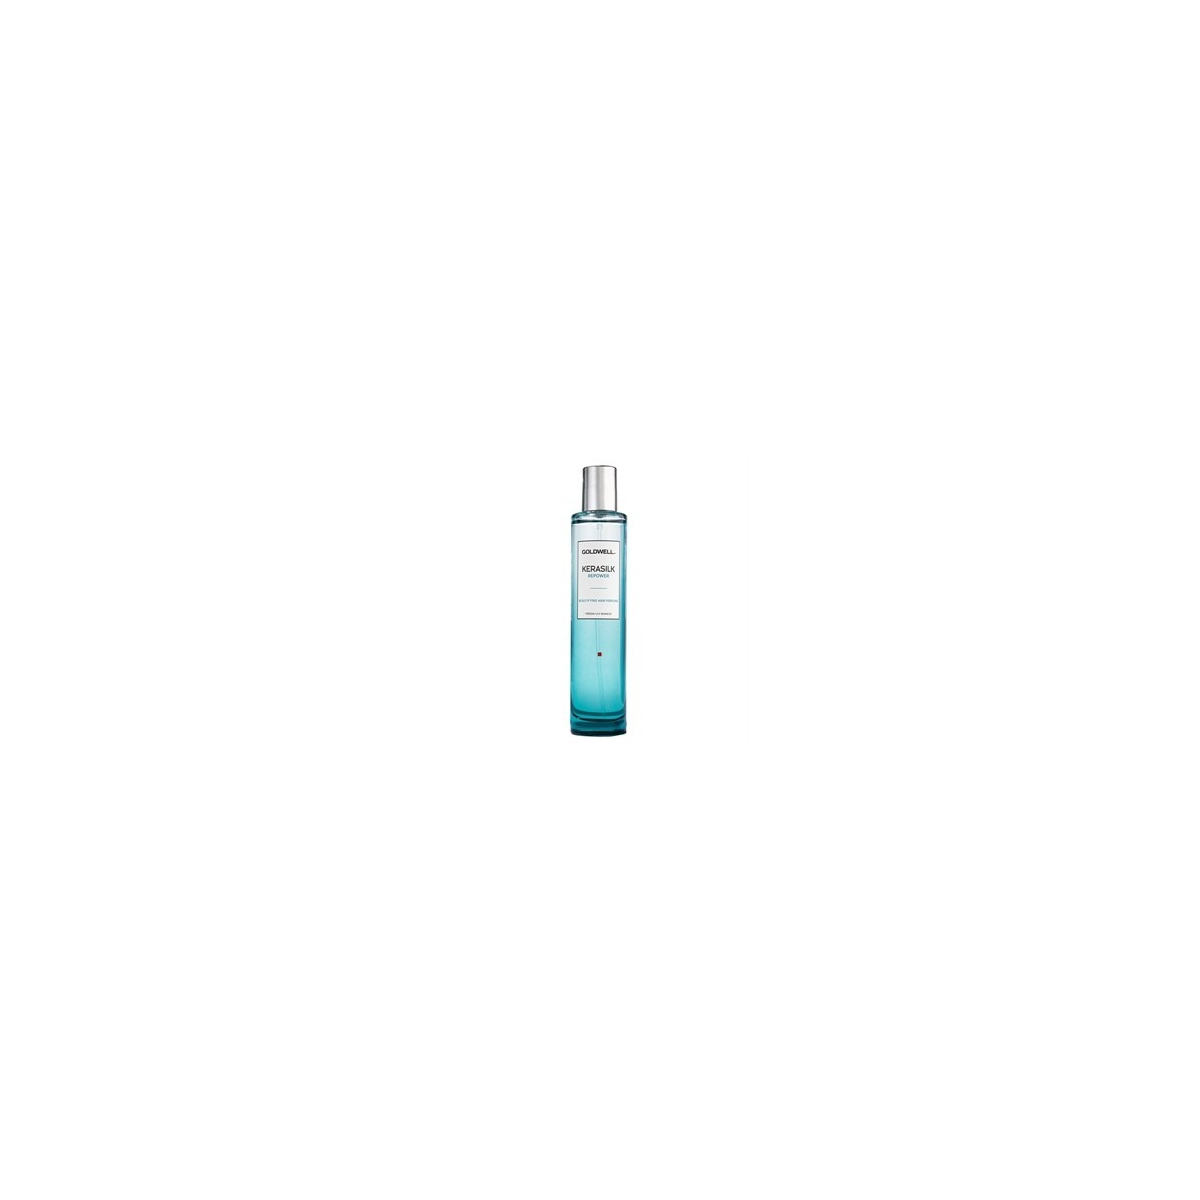 GOLDWELL - KERASILK REPOWER - Beautifyng hair perfume (50ml) Profumo per capelli